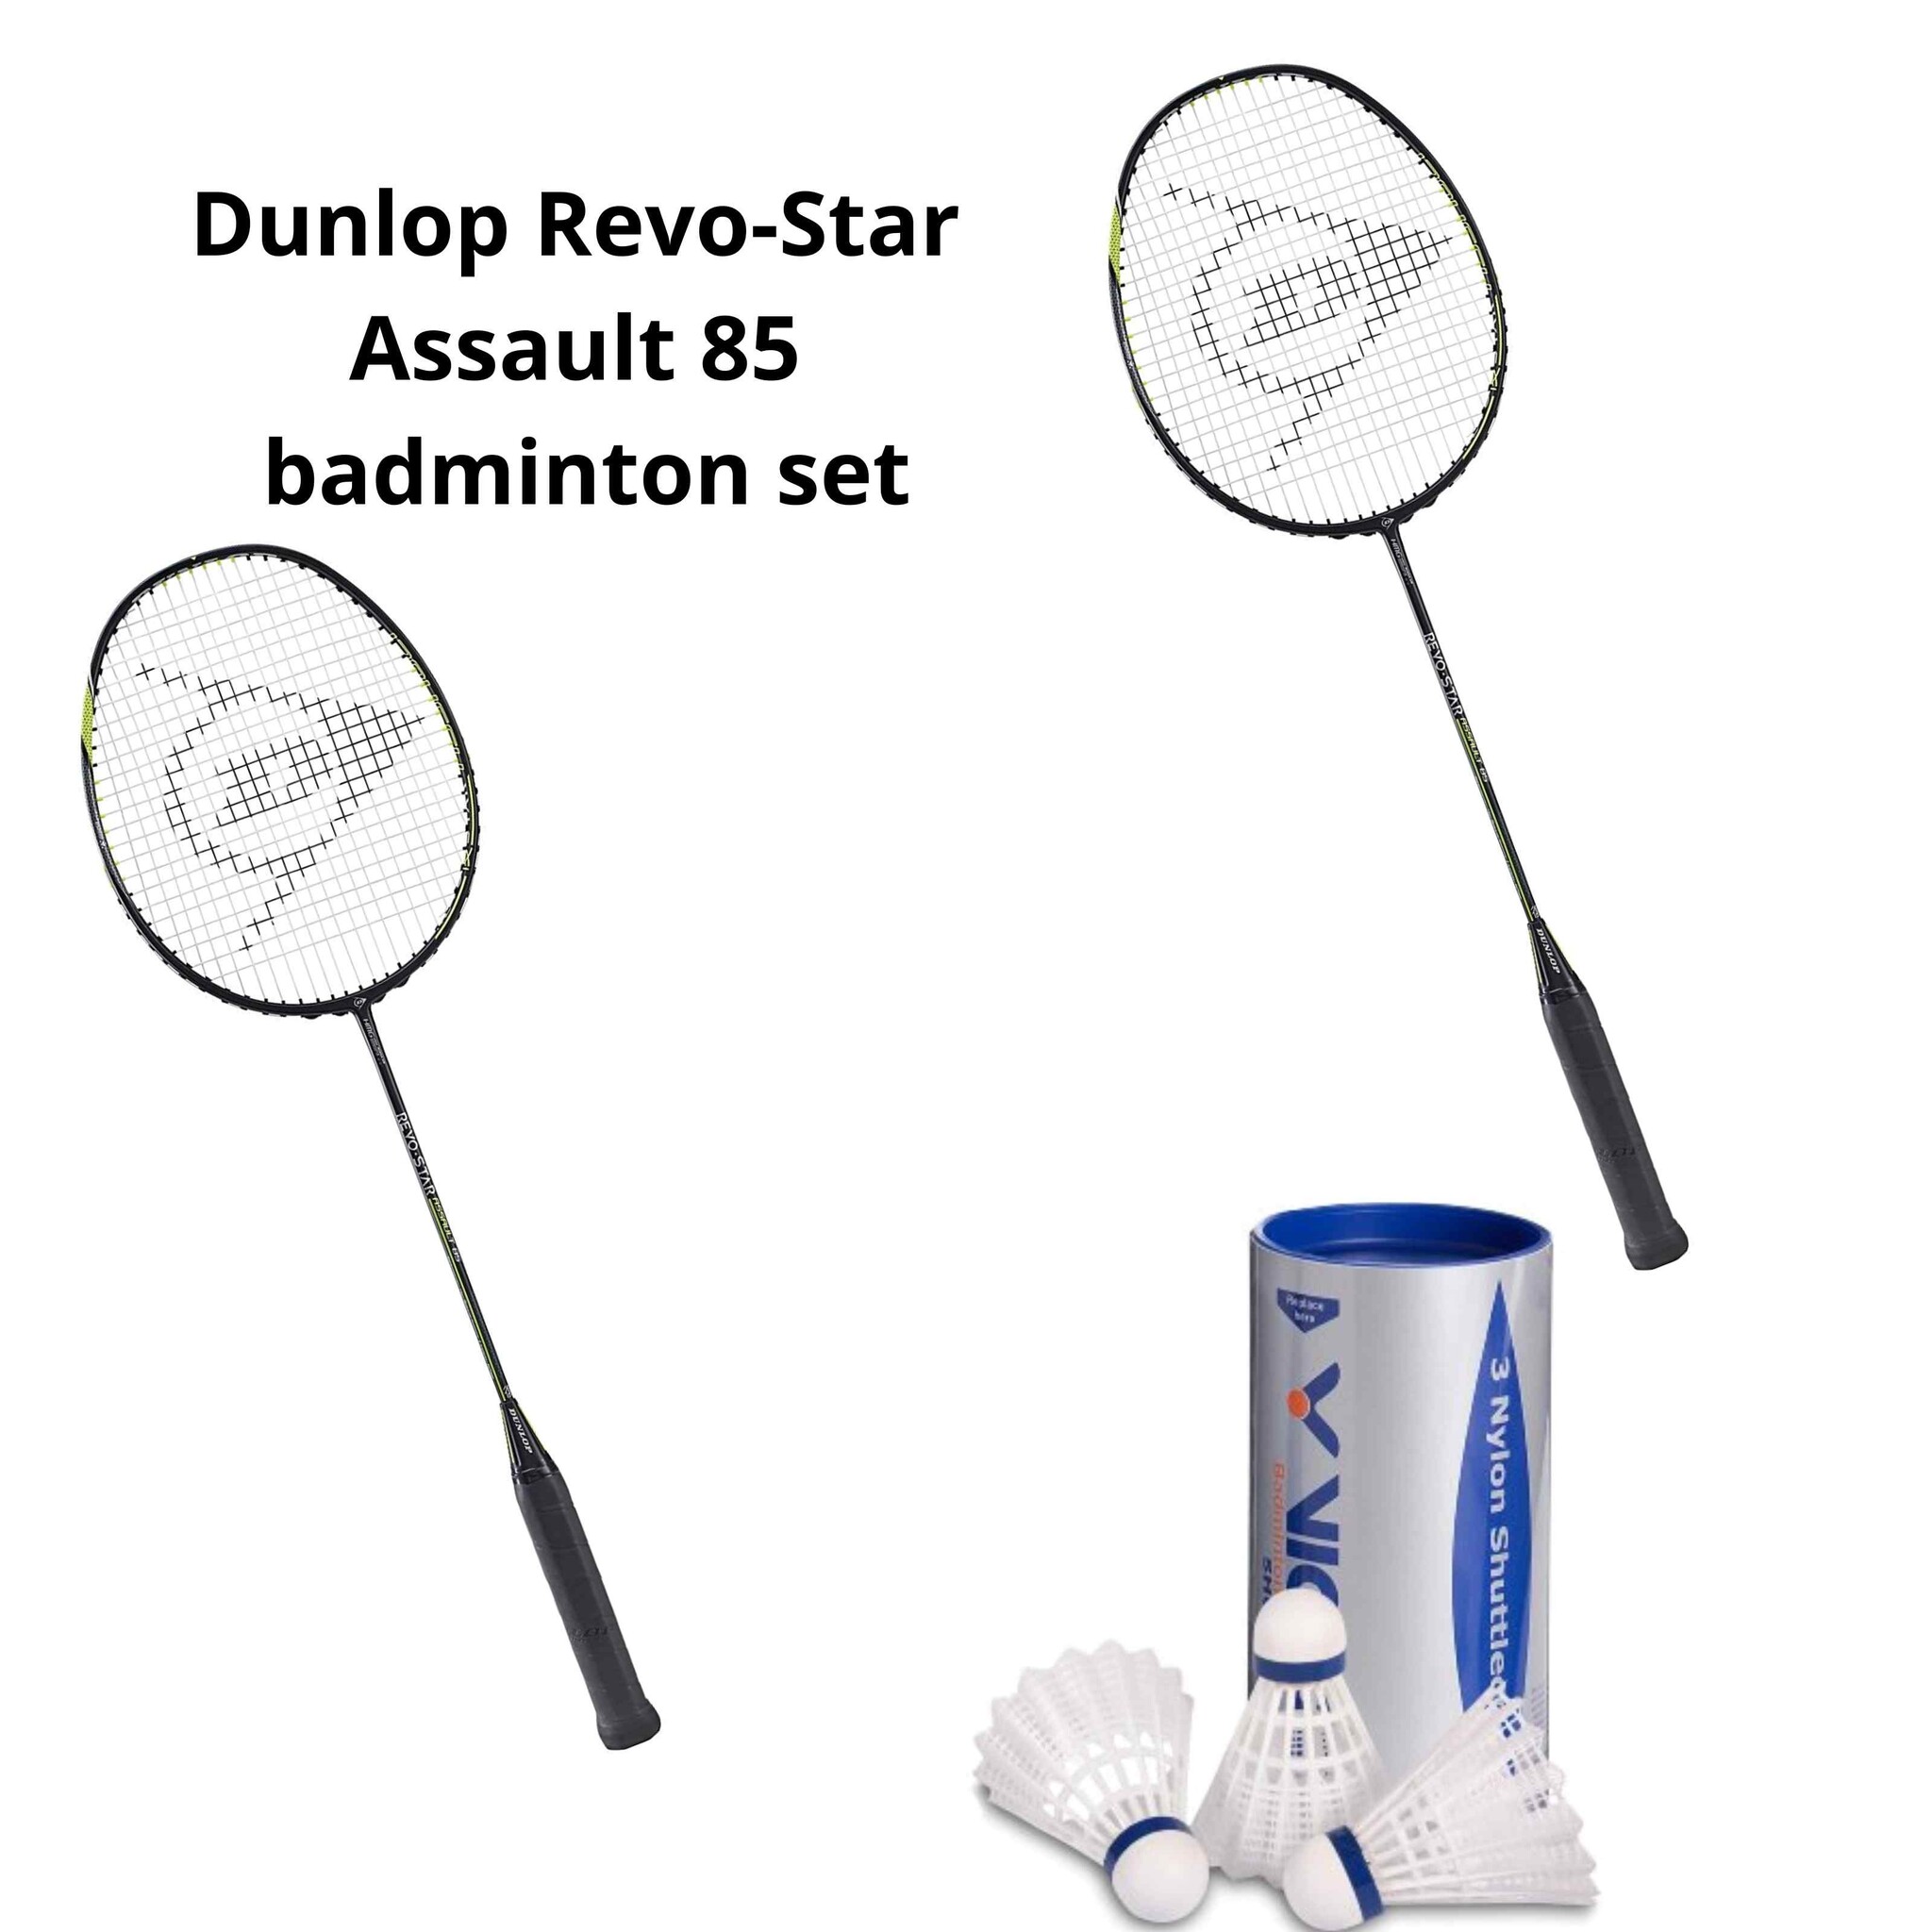 Badminton set Dunlop Revo-Star Assault 85 + shuttles